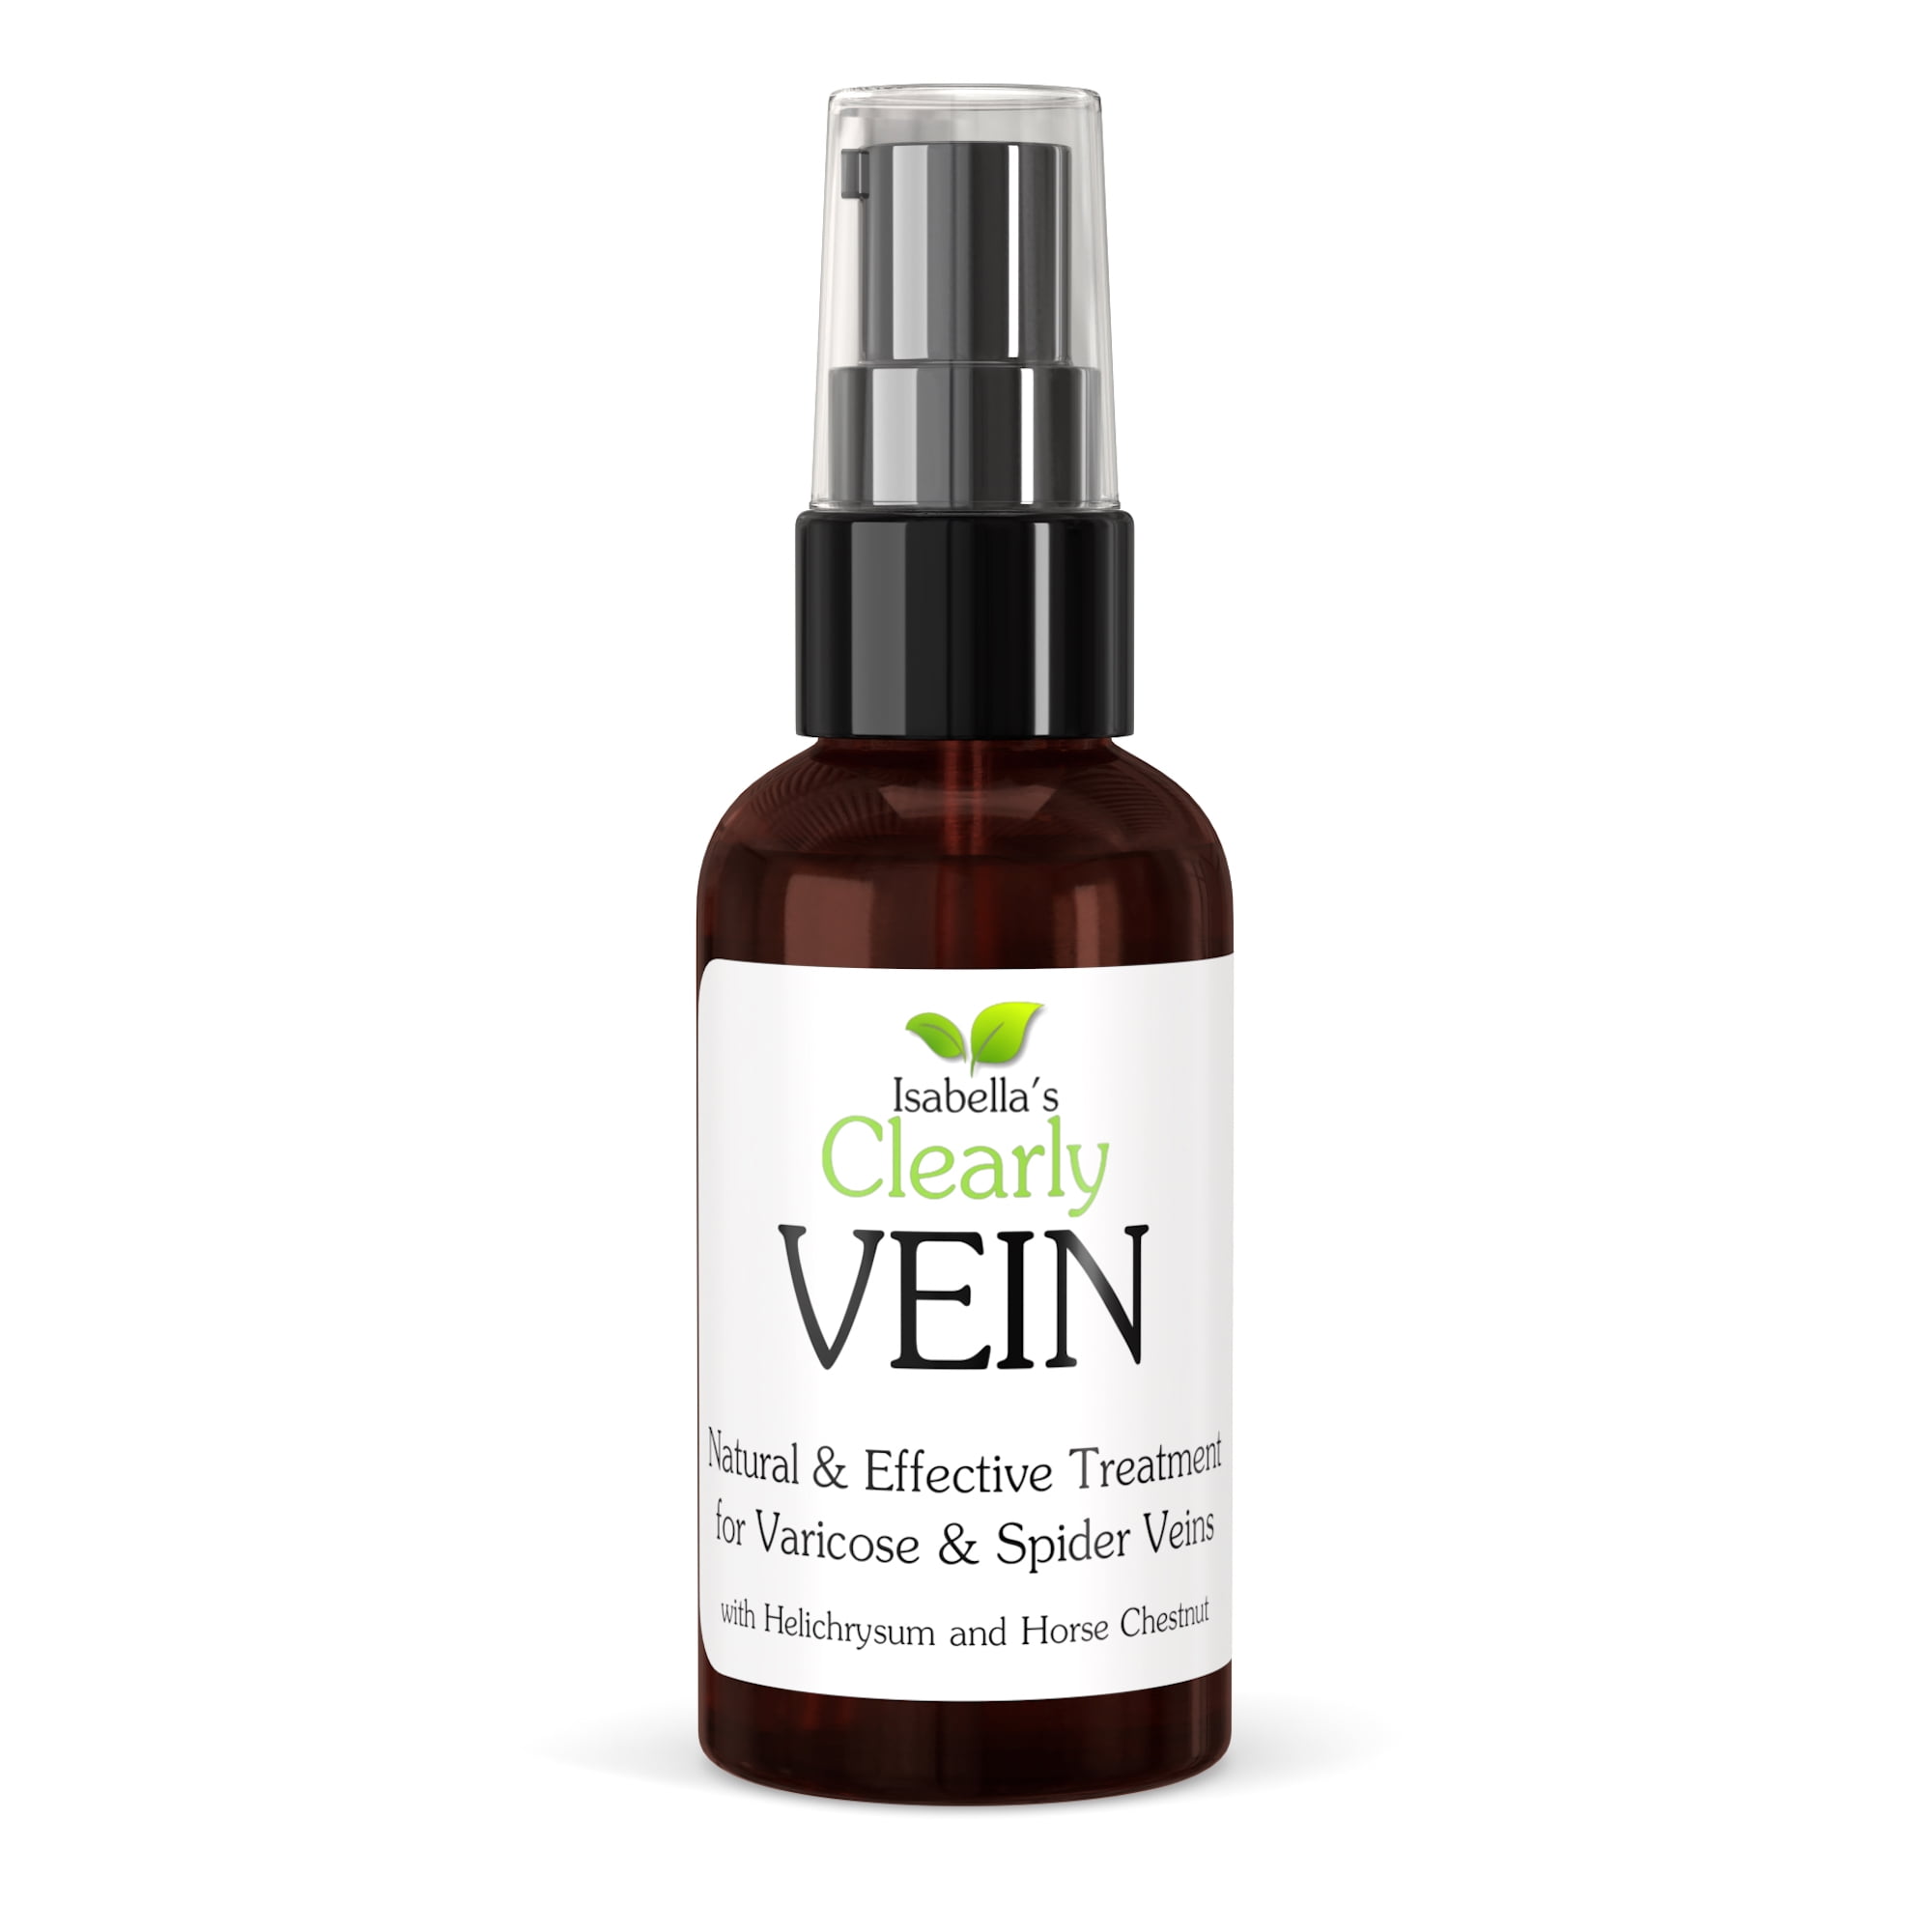 Varicose & Spider Vein Treatment - Pinellas Vascular